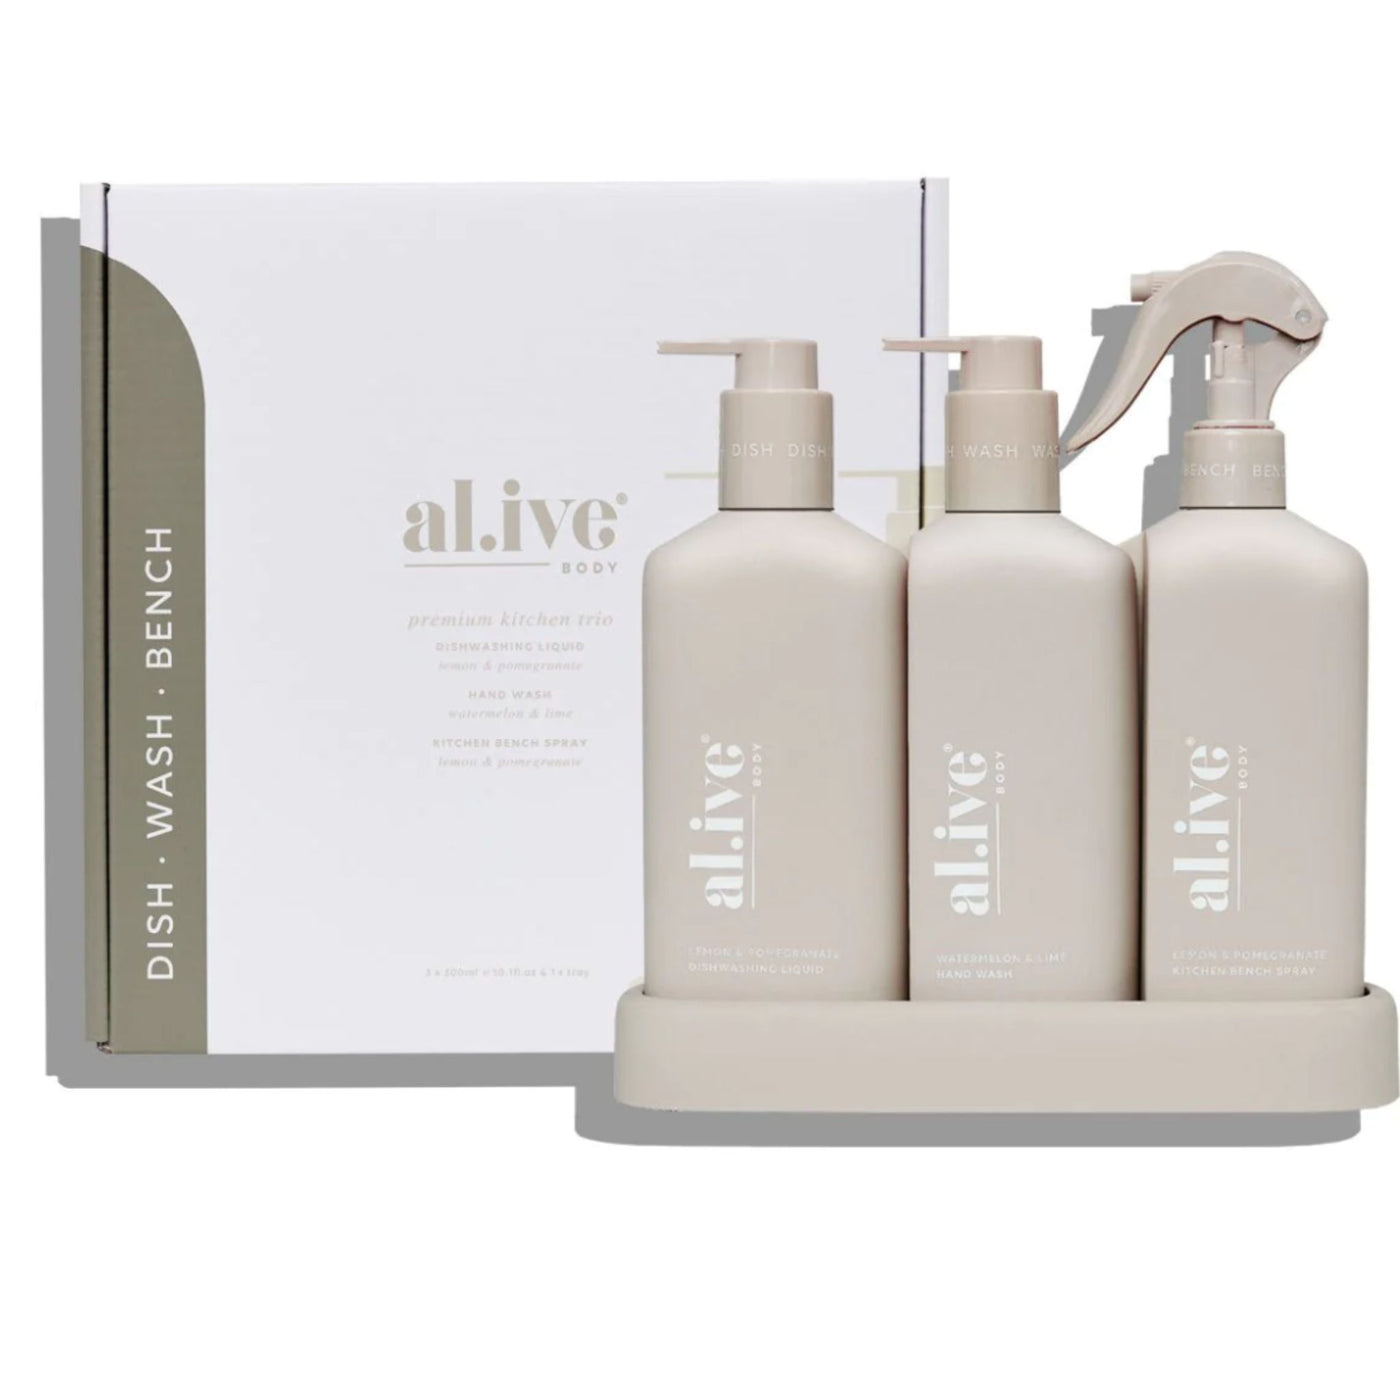 Al.ive Kitchen Trio , Dishwashing Liquid, Bench Spray & Handwash